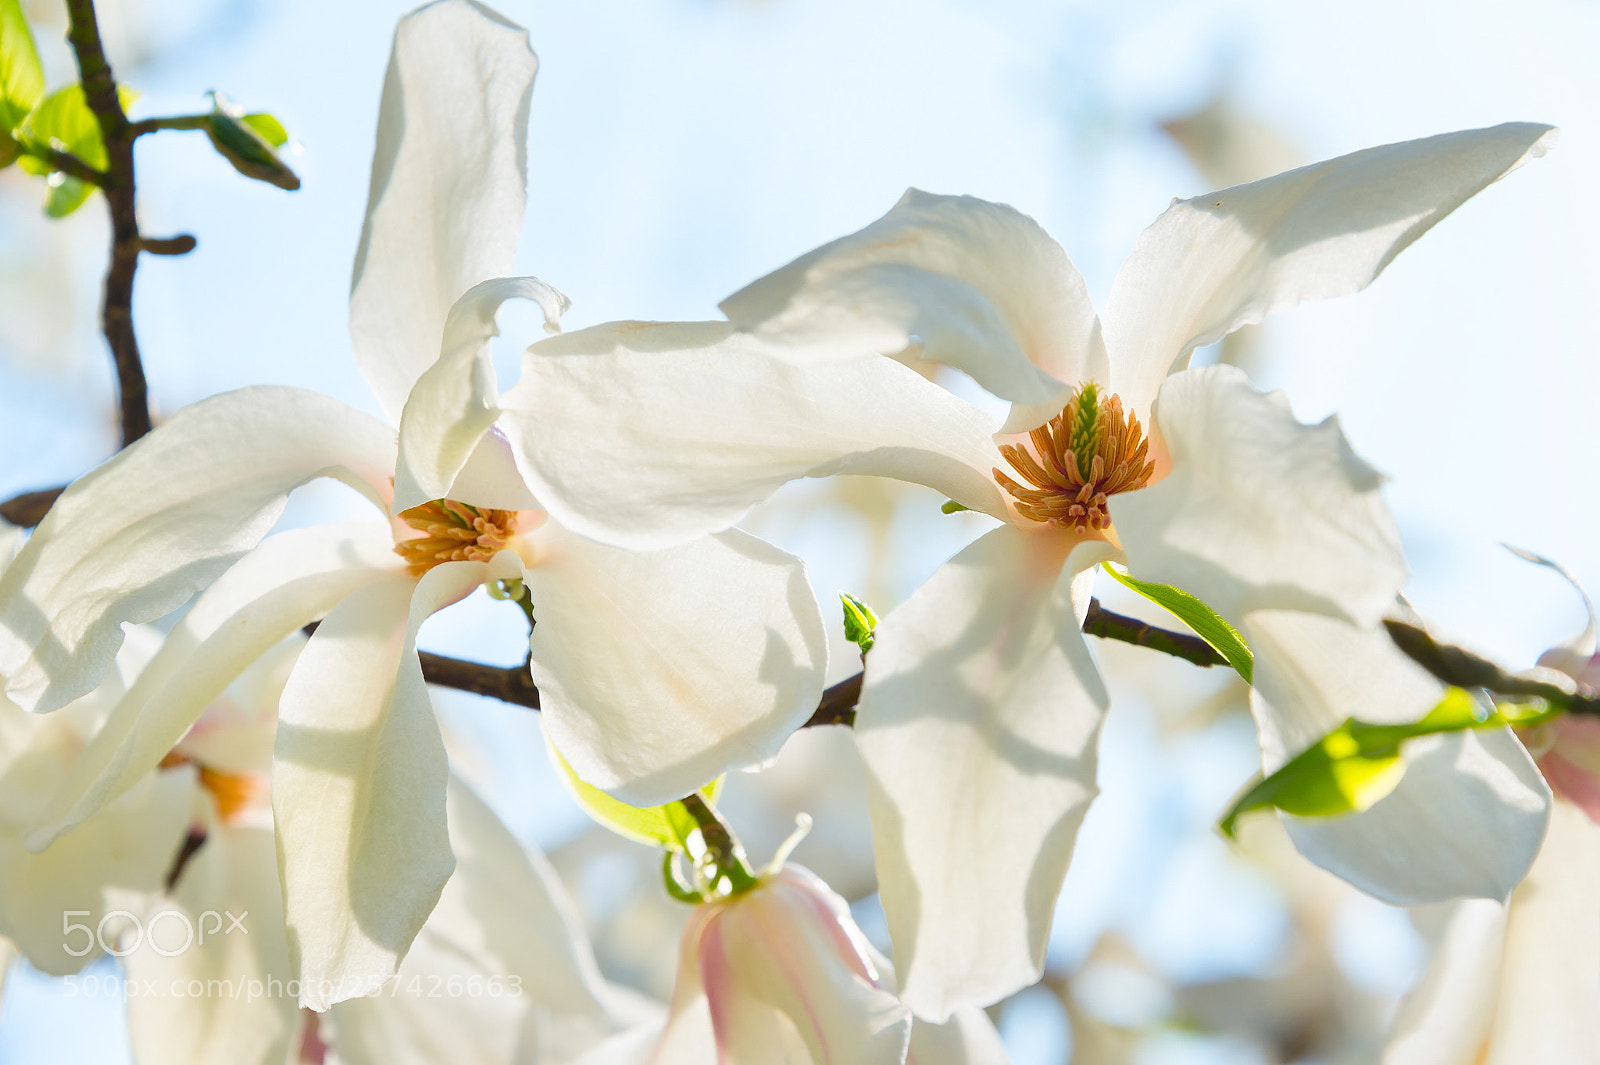 Nikon Df sample photo. Sunny blossom magnolia tree photography